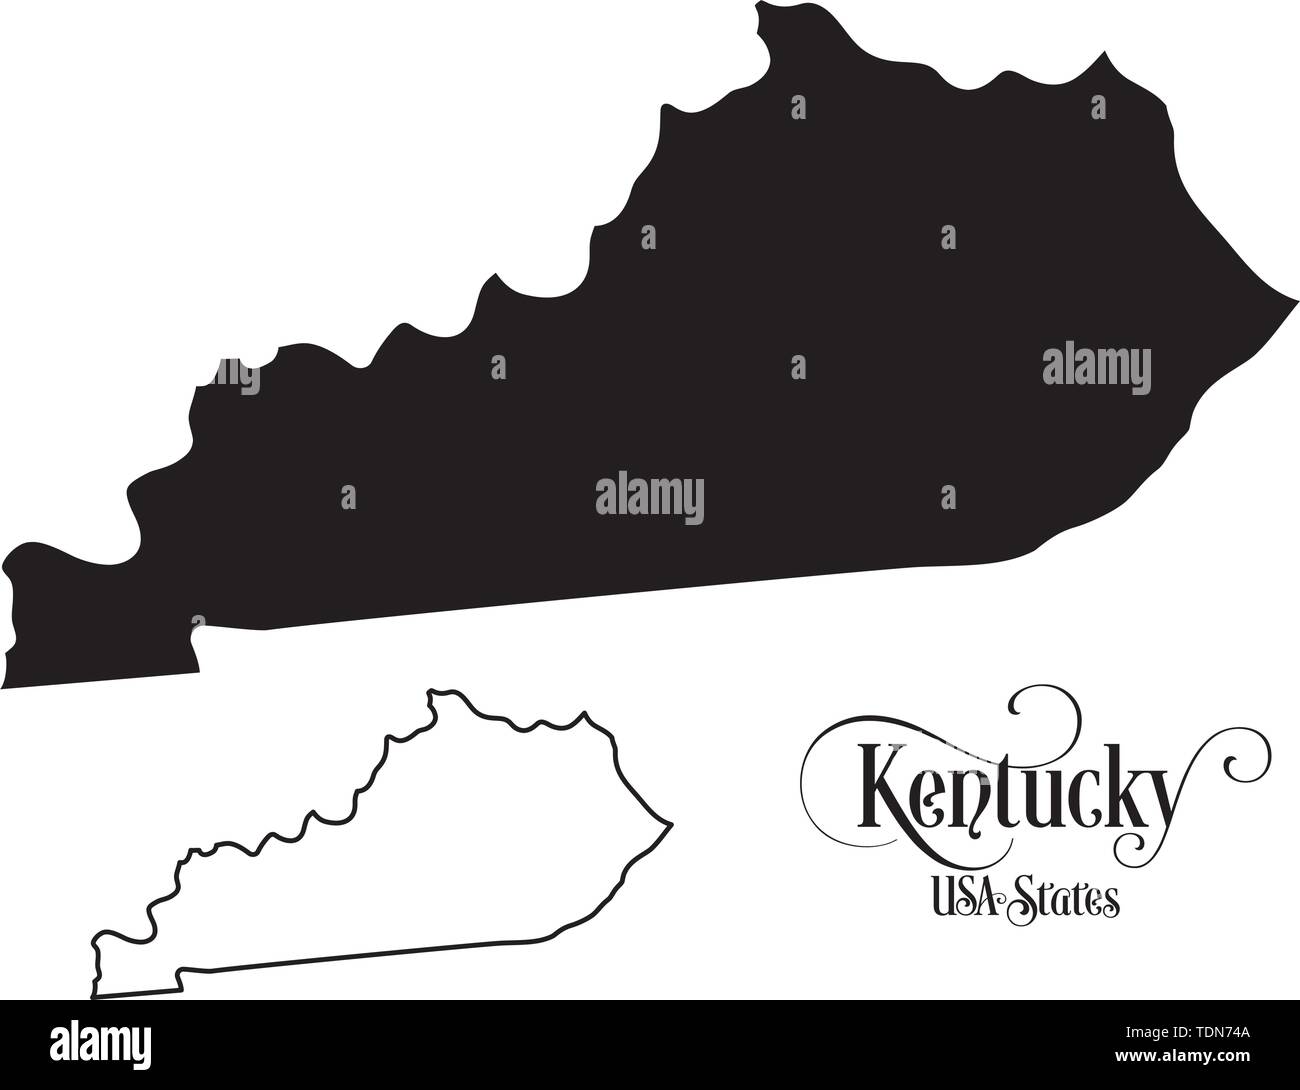 Mappa degli Stati Uniti d'America (USA) Stato del Kentucky - Illustrazione su sfondo bianco. Illustrazione Vettoriale